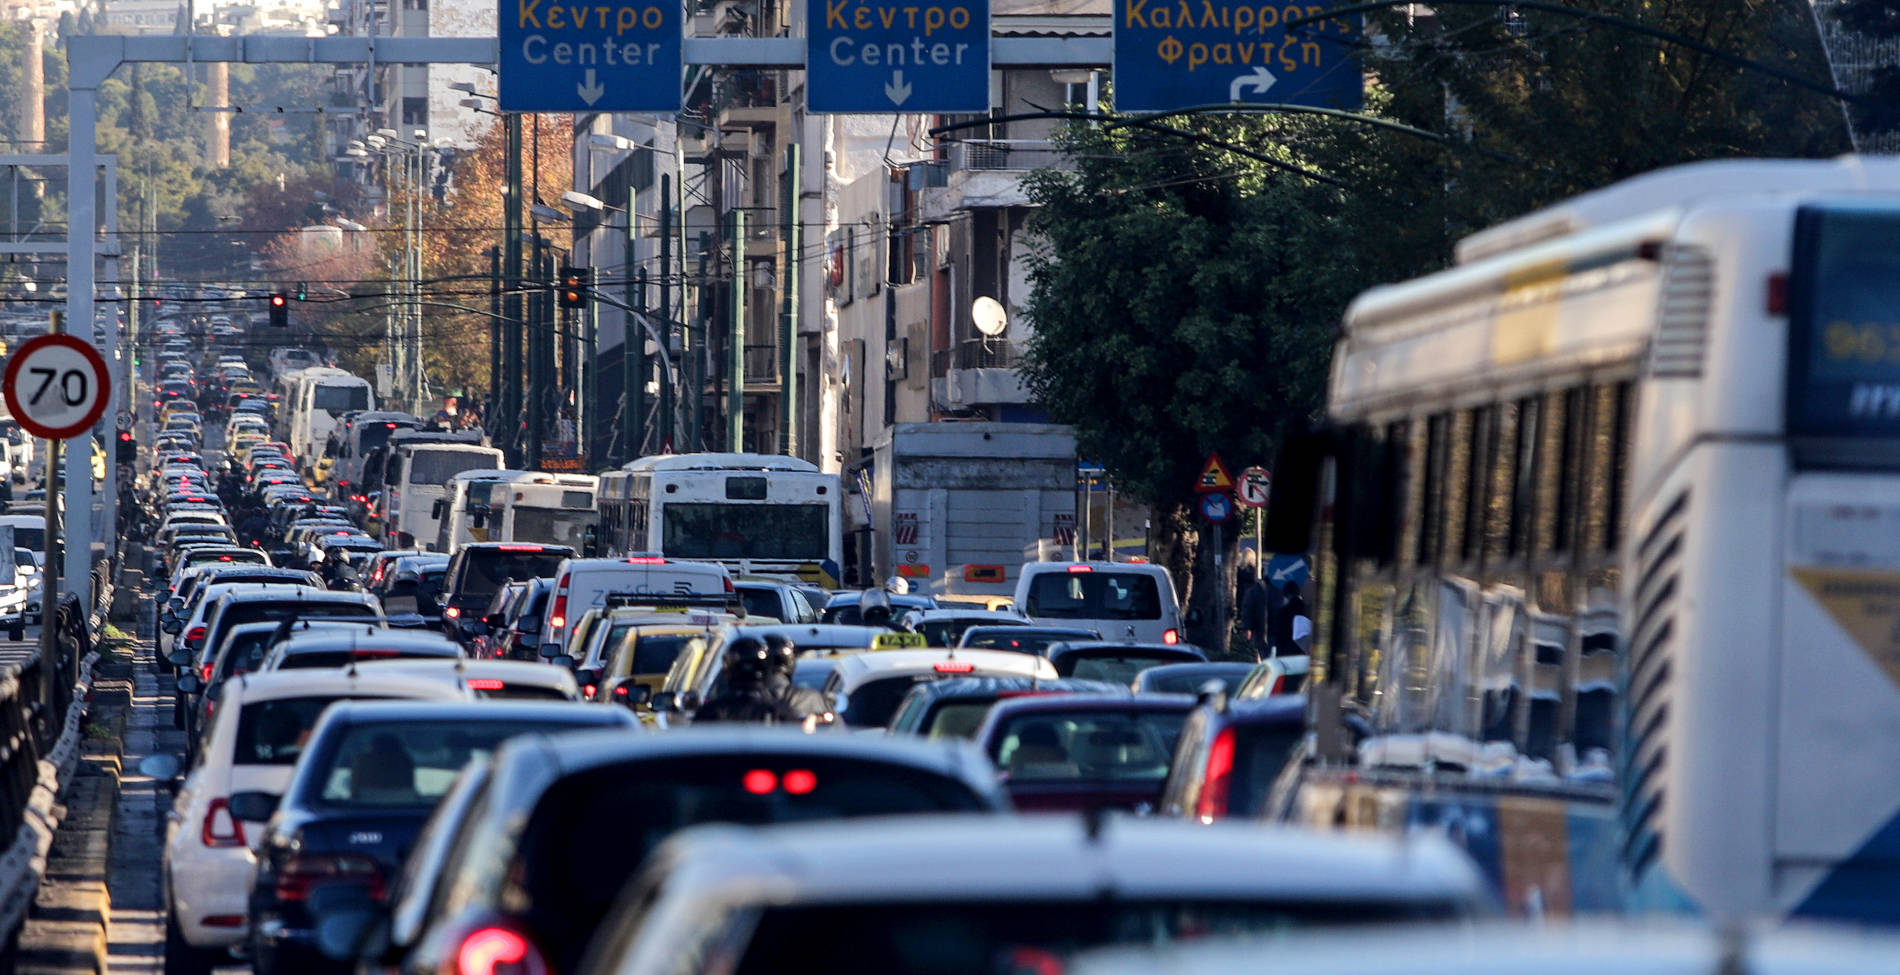 Κυκλοφοριακό πρόβλημα στην Αθήνα: Οι λύσεις για μία ανθρώπινη πόλη